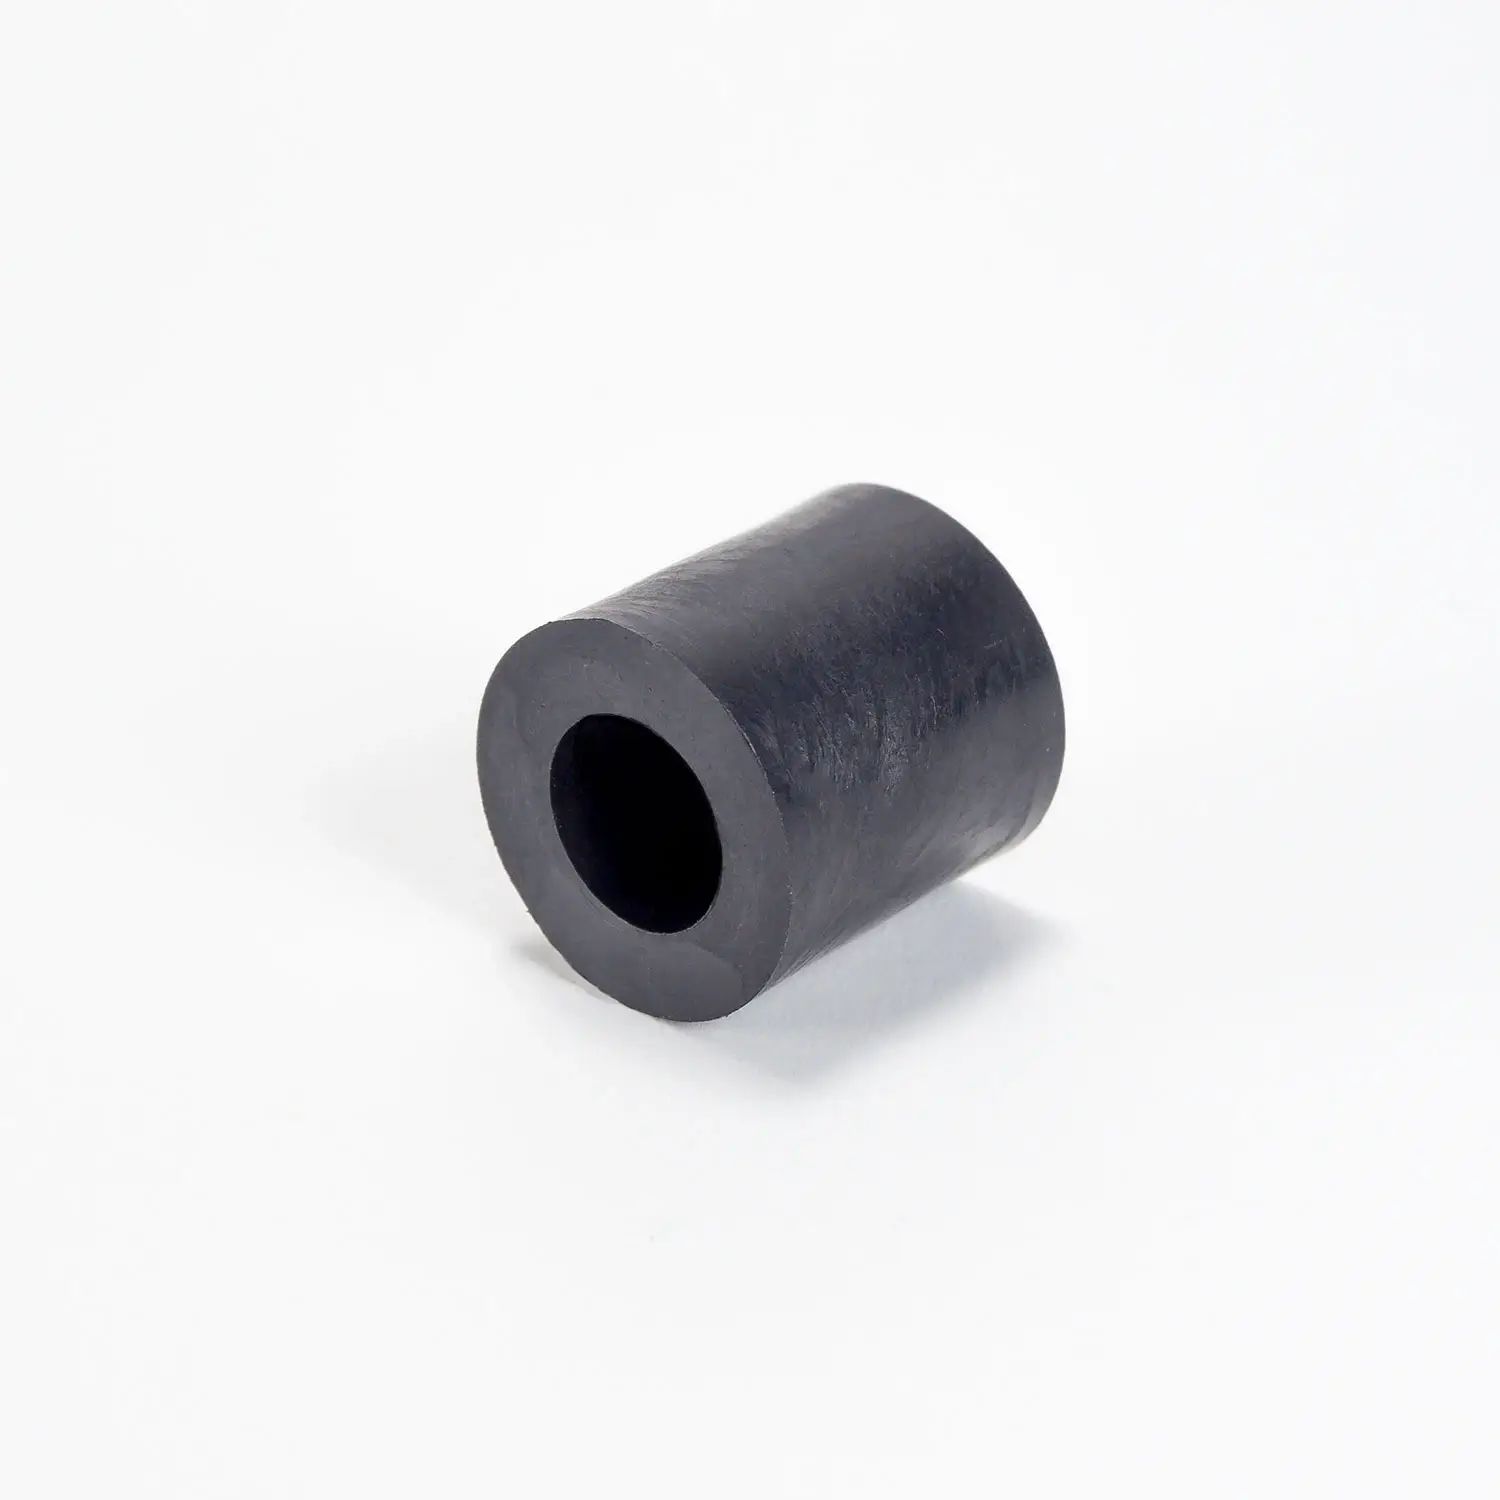 Kunststoff  Distanzhüöse 7mm schwarz